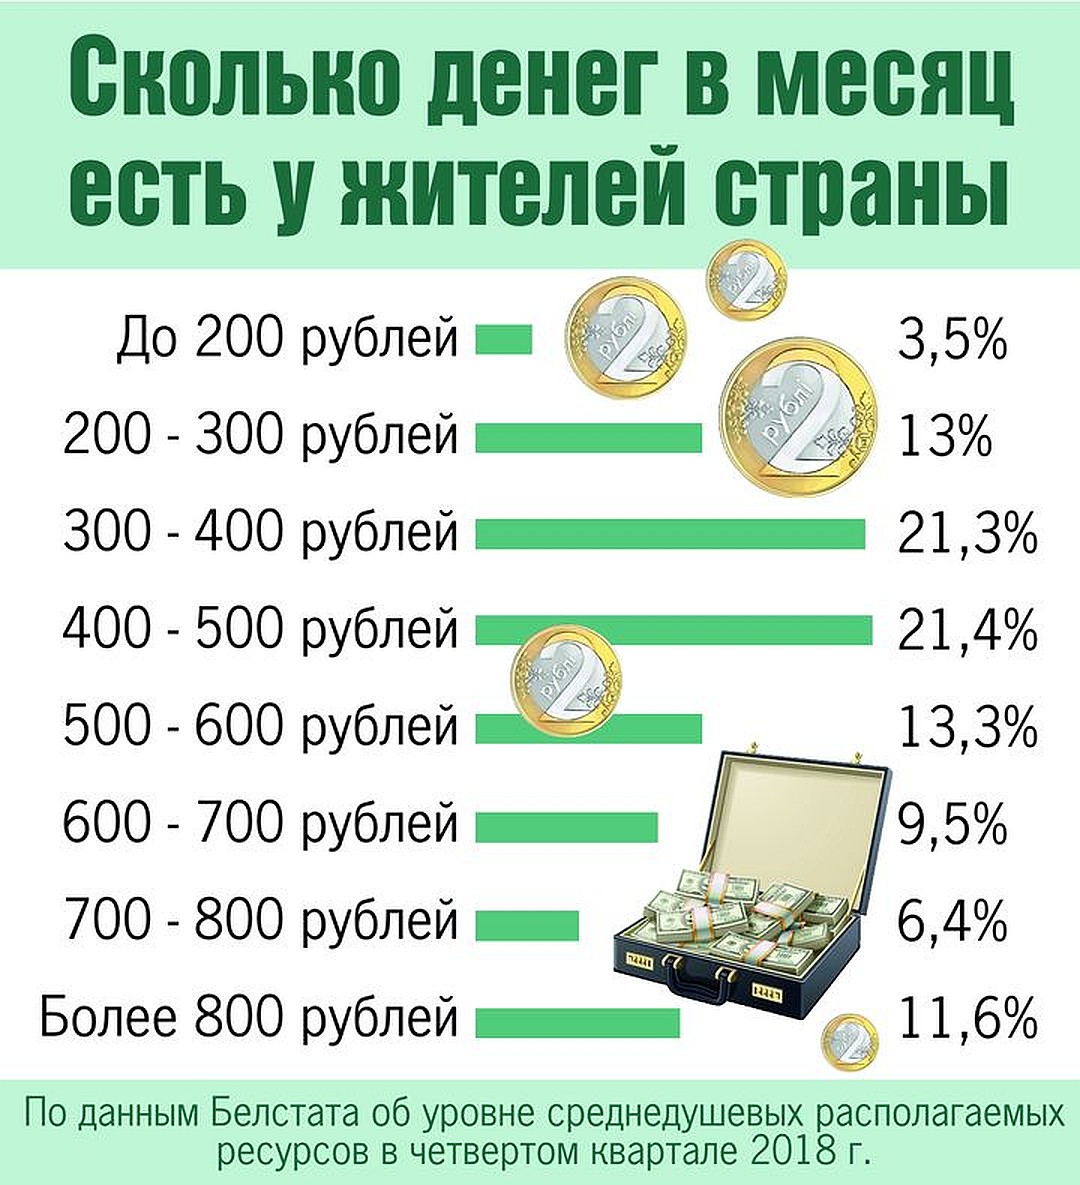 250 сколько белорусских рублей. Сколько денег. Рублей в месяц. Сколько денег в месяц. Зарплата 300 рублей.